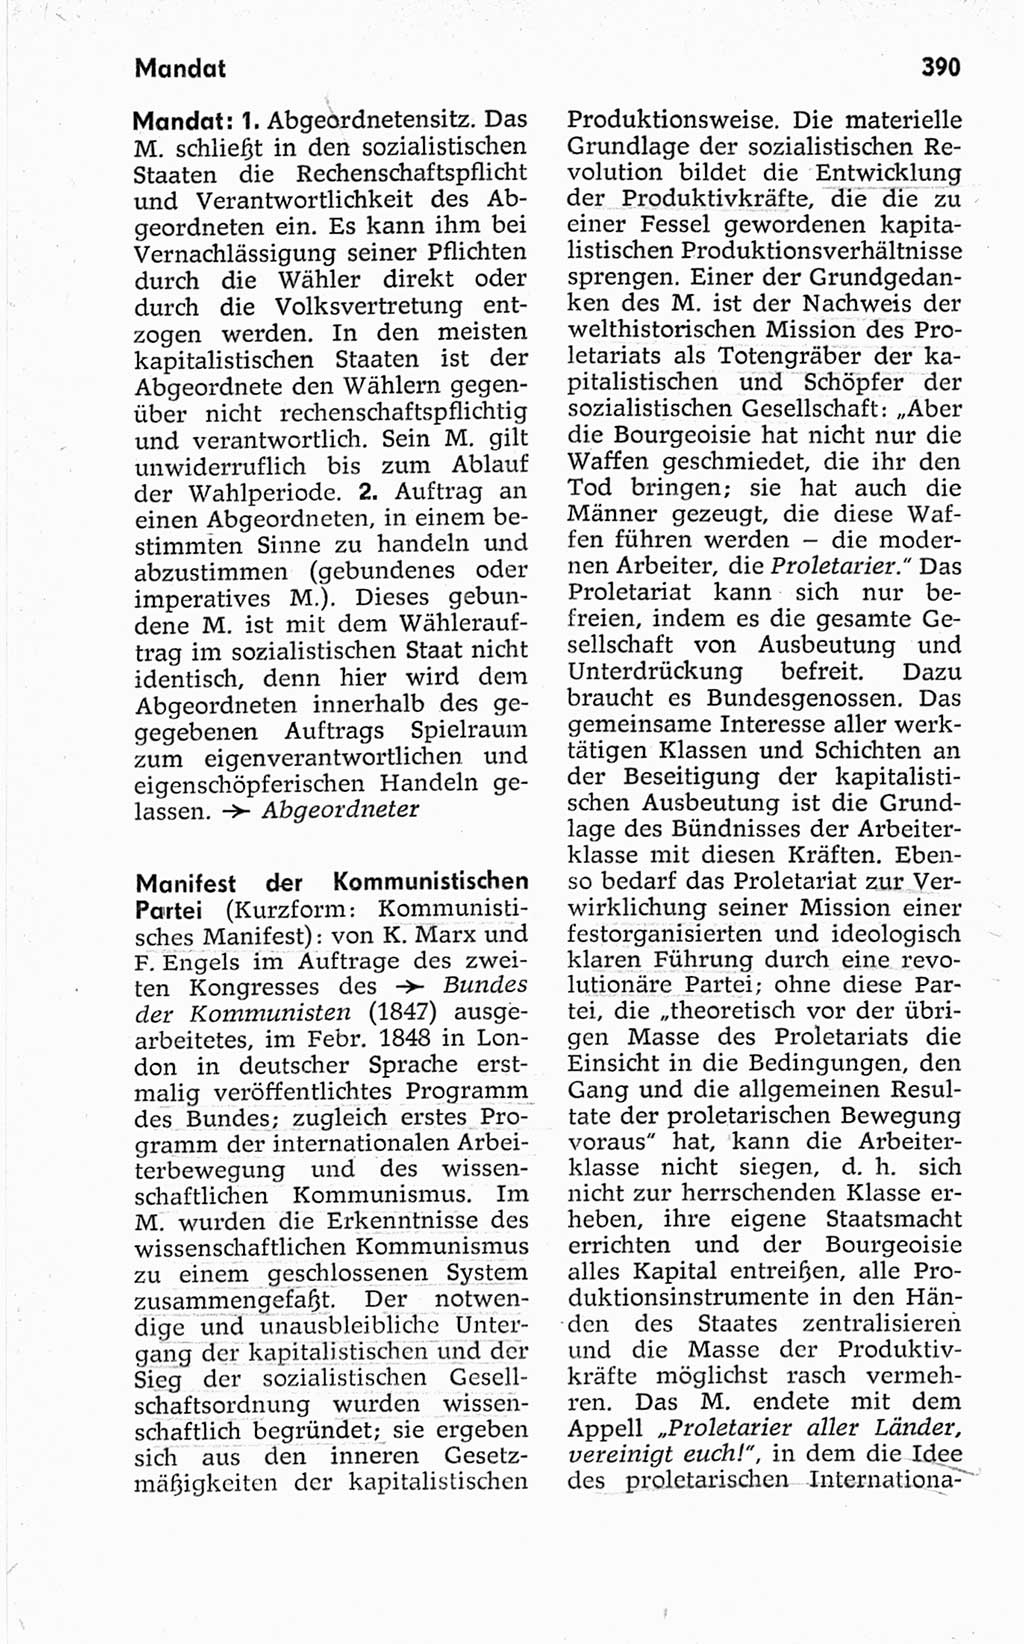 Kleines politisches Wörterbuch [Deutsche Demokratische Republik (DDR)] 1967, Seite 390 (Kl. pol. Wb. DDR 1967, S. 390)